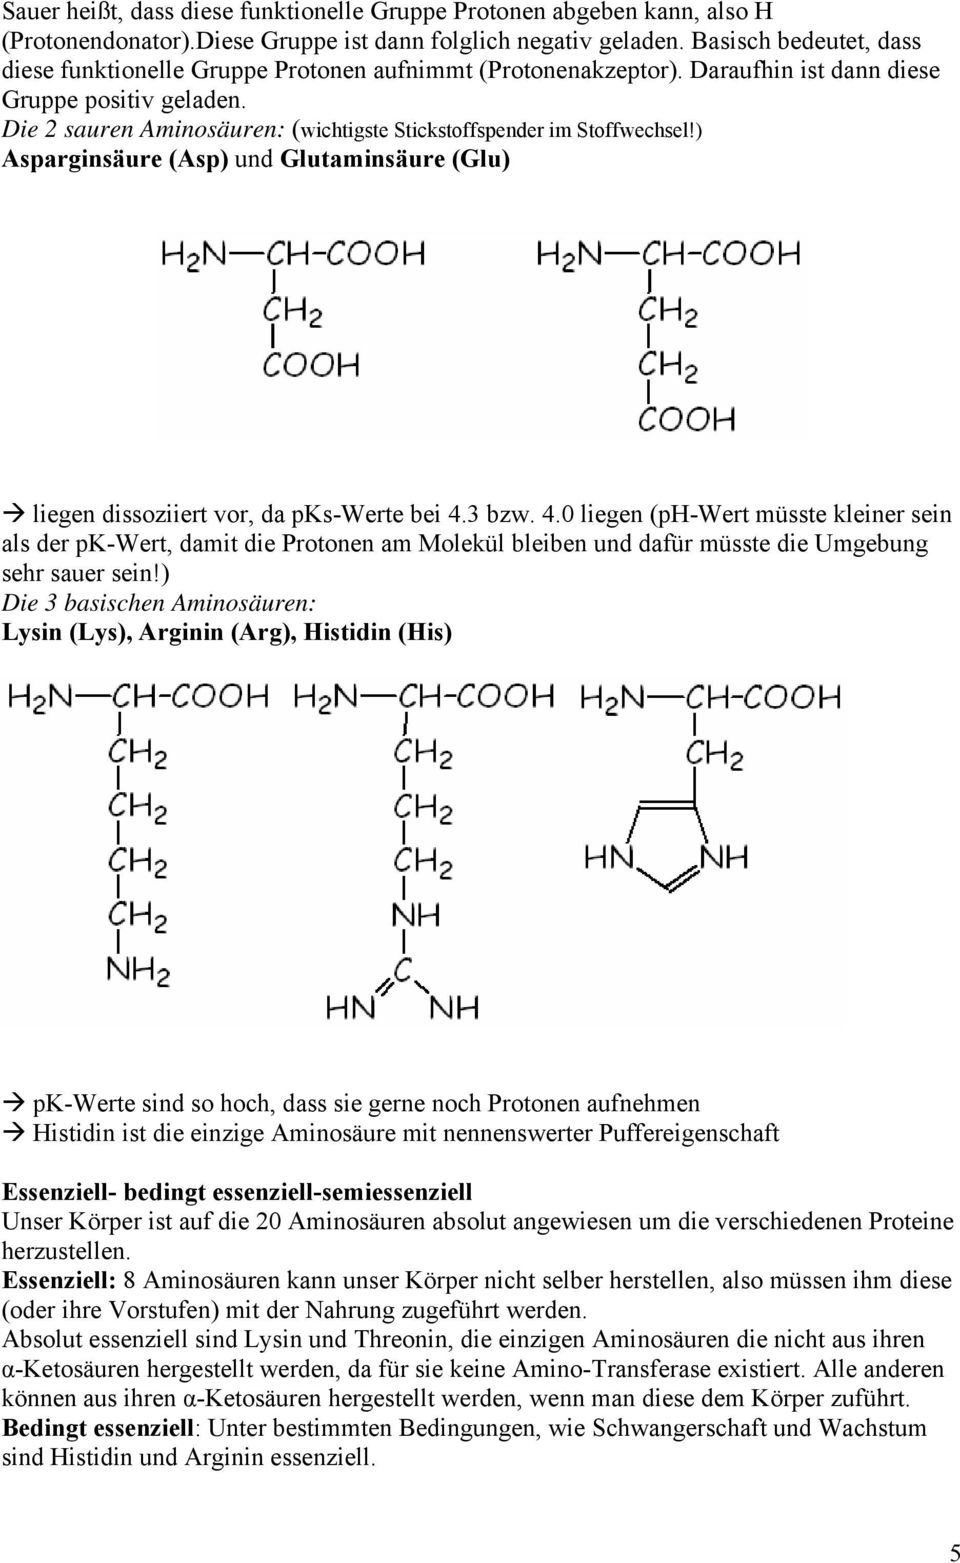 Die 2 sauren Aminosäuren: (wichtigste Stickstoffspender im Stoffwechsel!) Asparginsäure (Asp) und Glutaminsäure (Glu) liegen dissoziiert vor, da pks-werte bei 4.